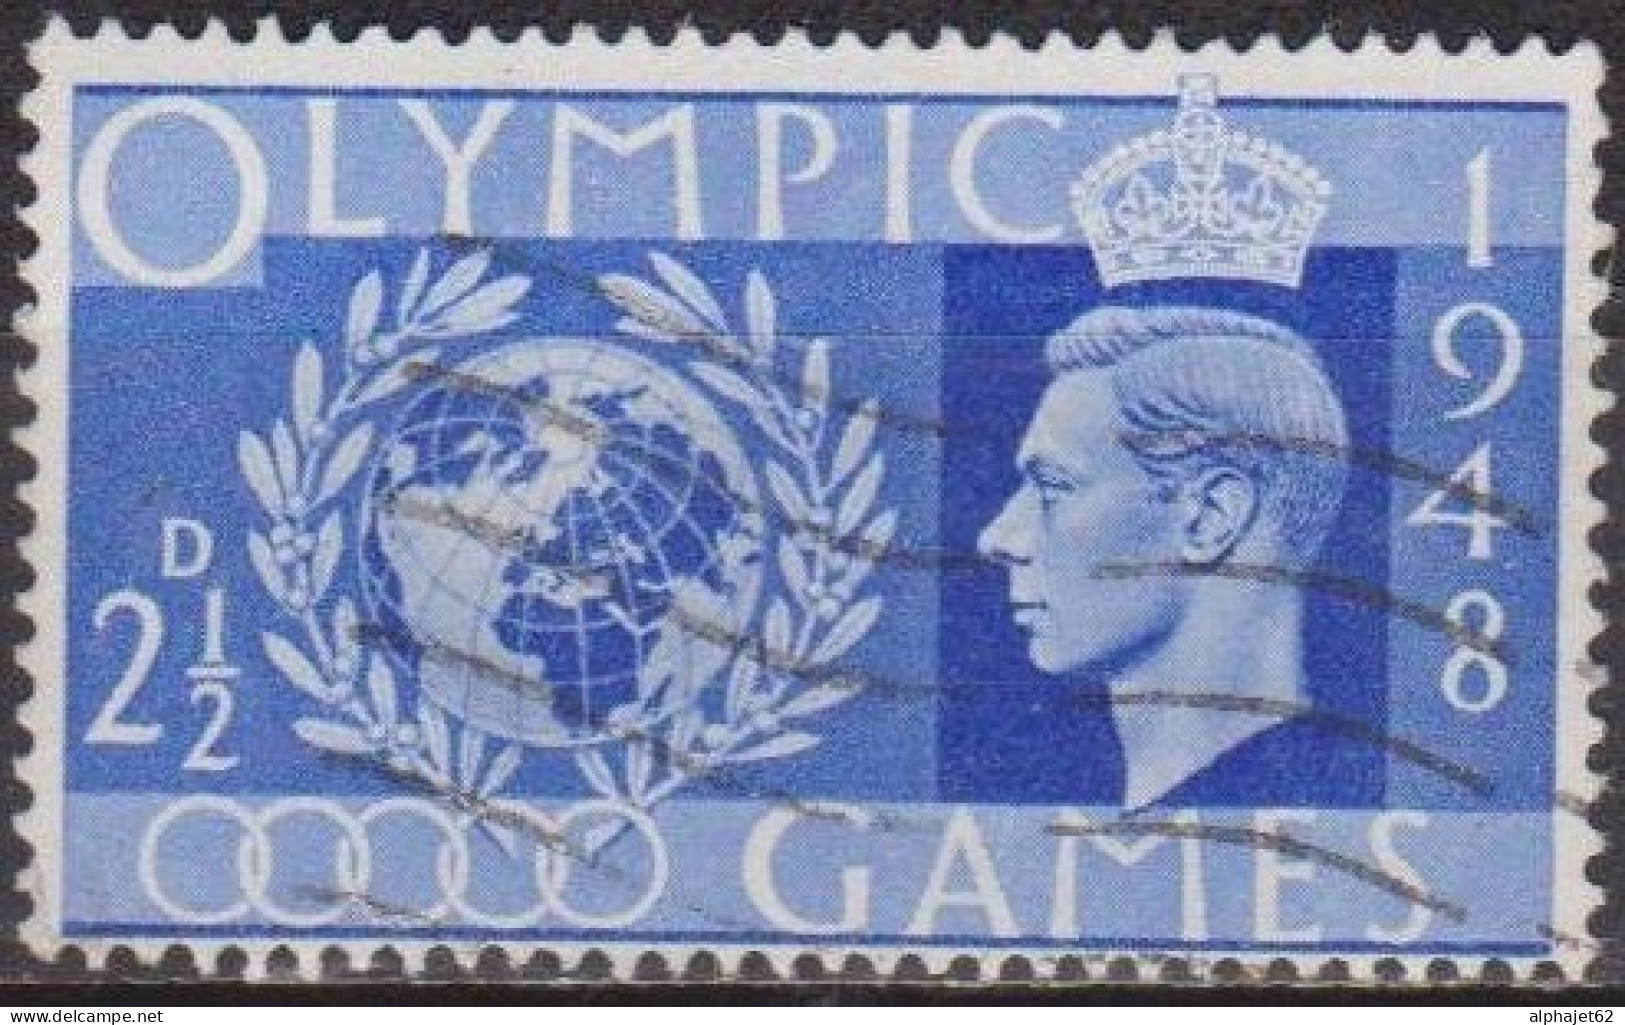 Jeux Olympiques De Londres - GRANDE BRETAGNE - Globe Et Lauriers - N° 241 - 1948 - Usati